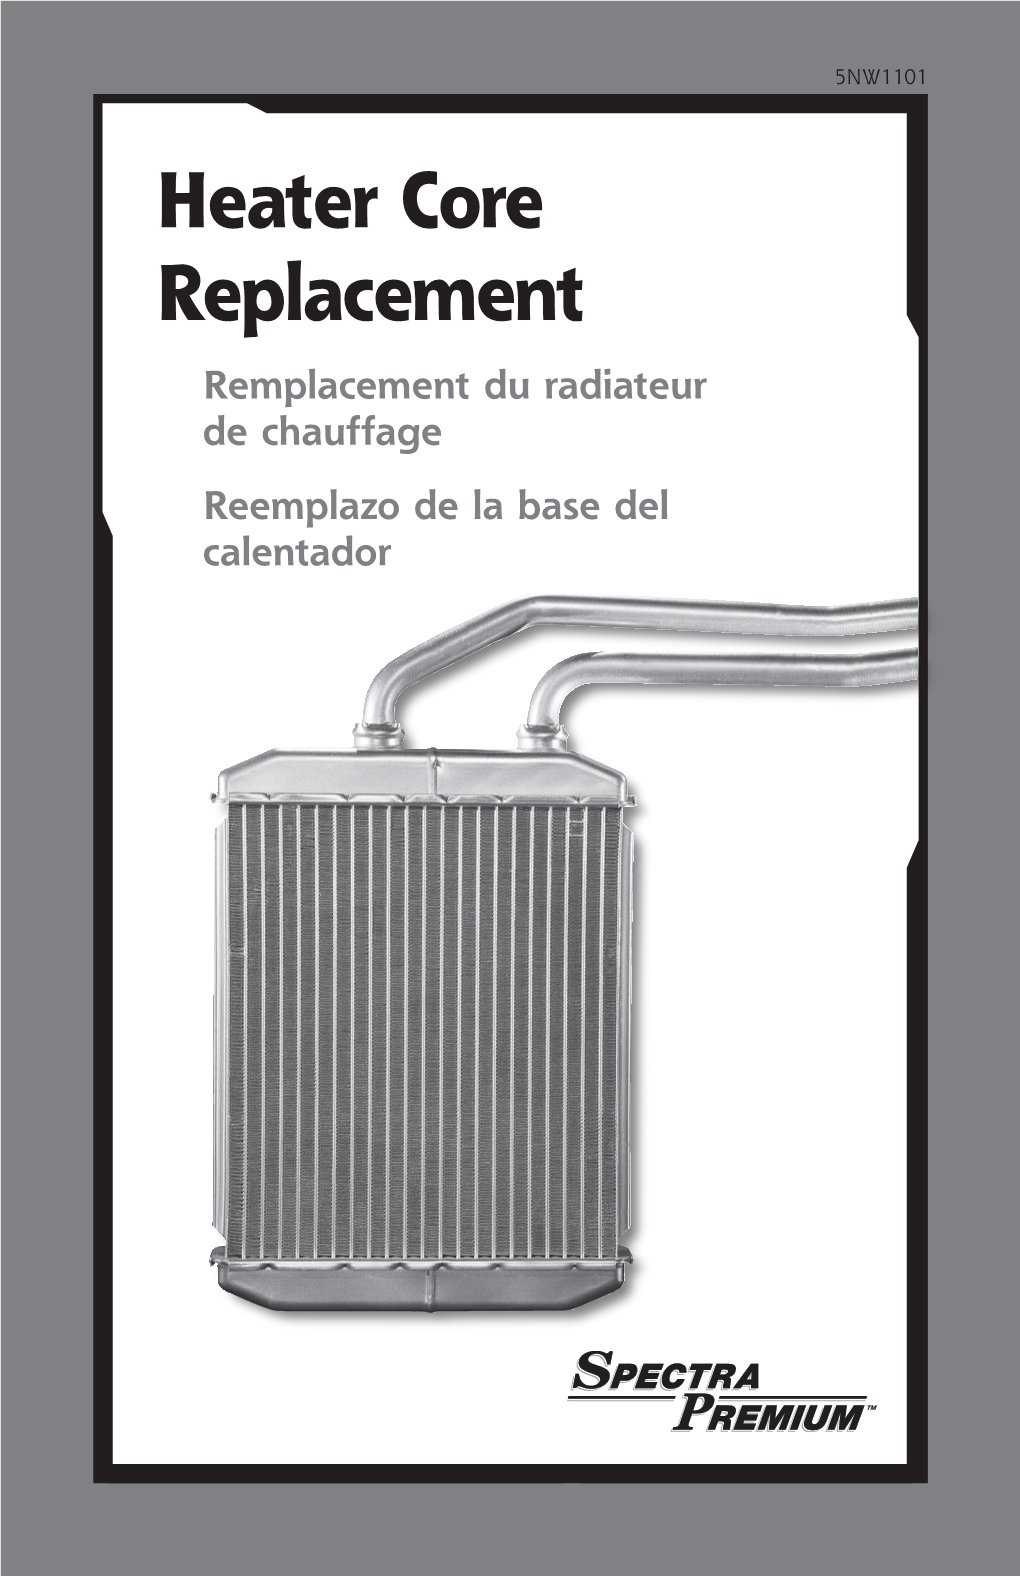 Heater Core Replacement Remplacement Du Radiateur De Chauffage Reemplazo De La Base Del Calentador Important Notes for Heater Core Replacement